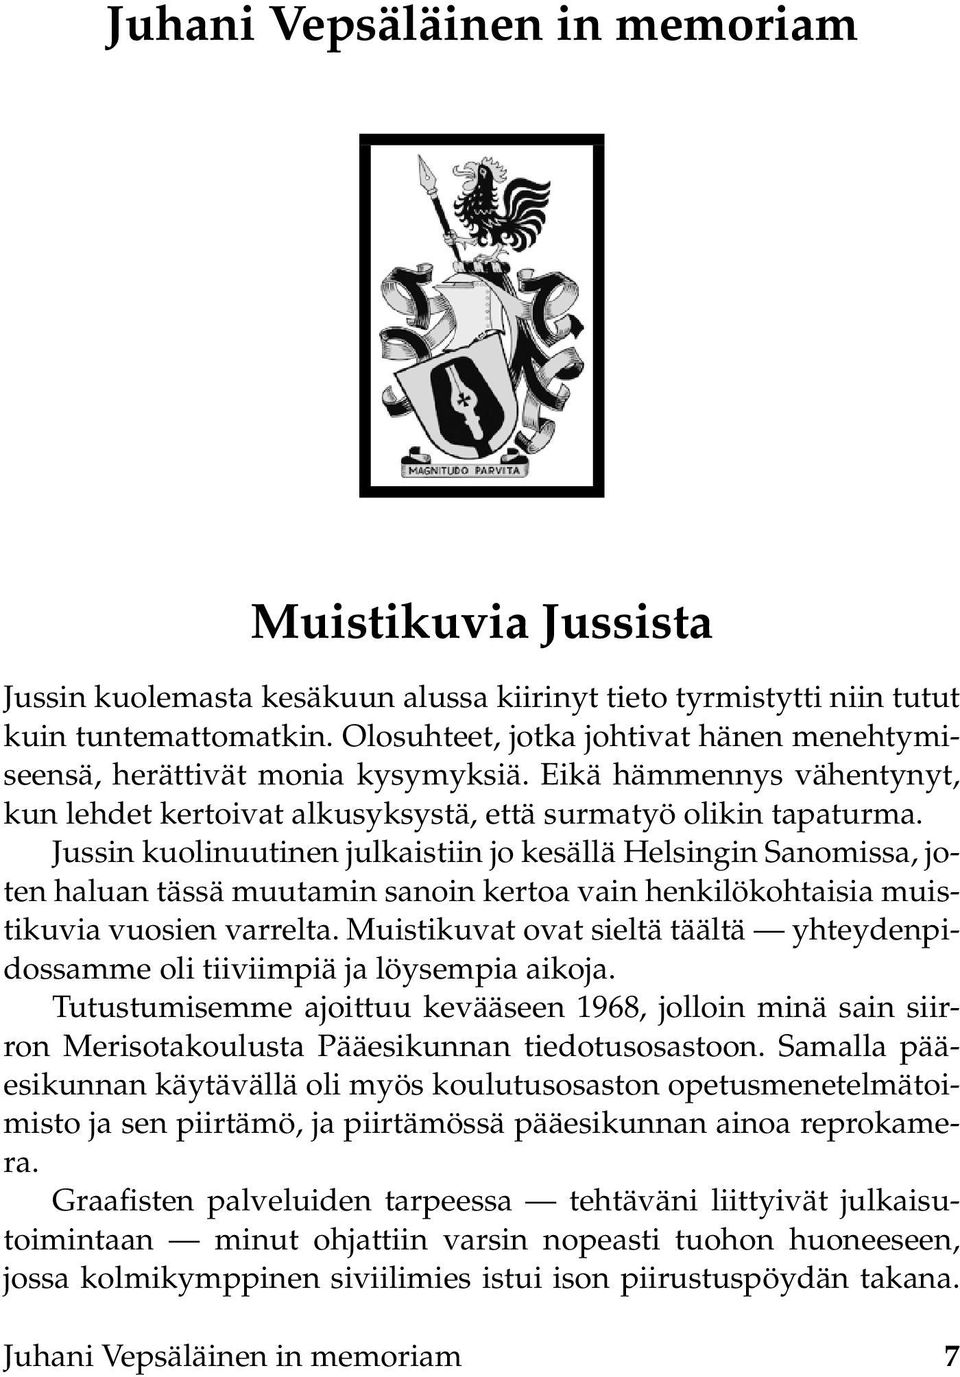 Jussin kuolinuutinen julkaistiin jo kesällä Helsingin Sanomissa, joten haluan tässä muutamin sanoin kertoa vain henkilökohtaisia muistikuvia vuosien varrelta.